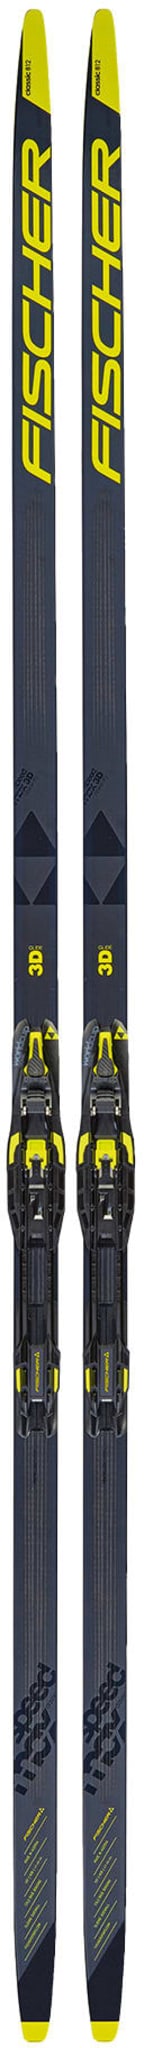 Speedmax klassisk ski med kortere trykkpunkter!